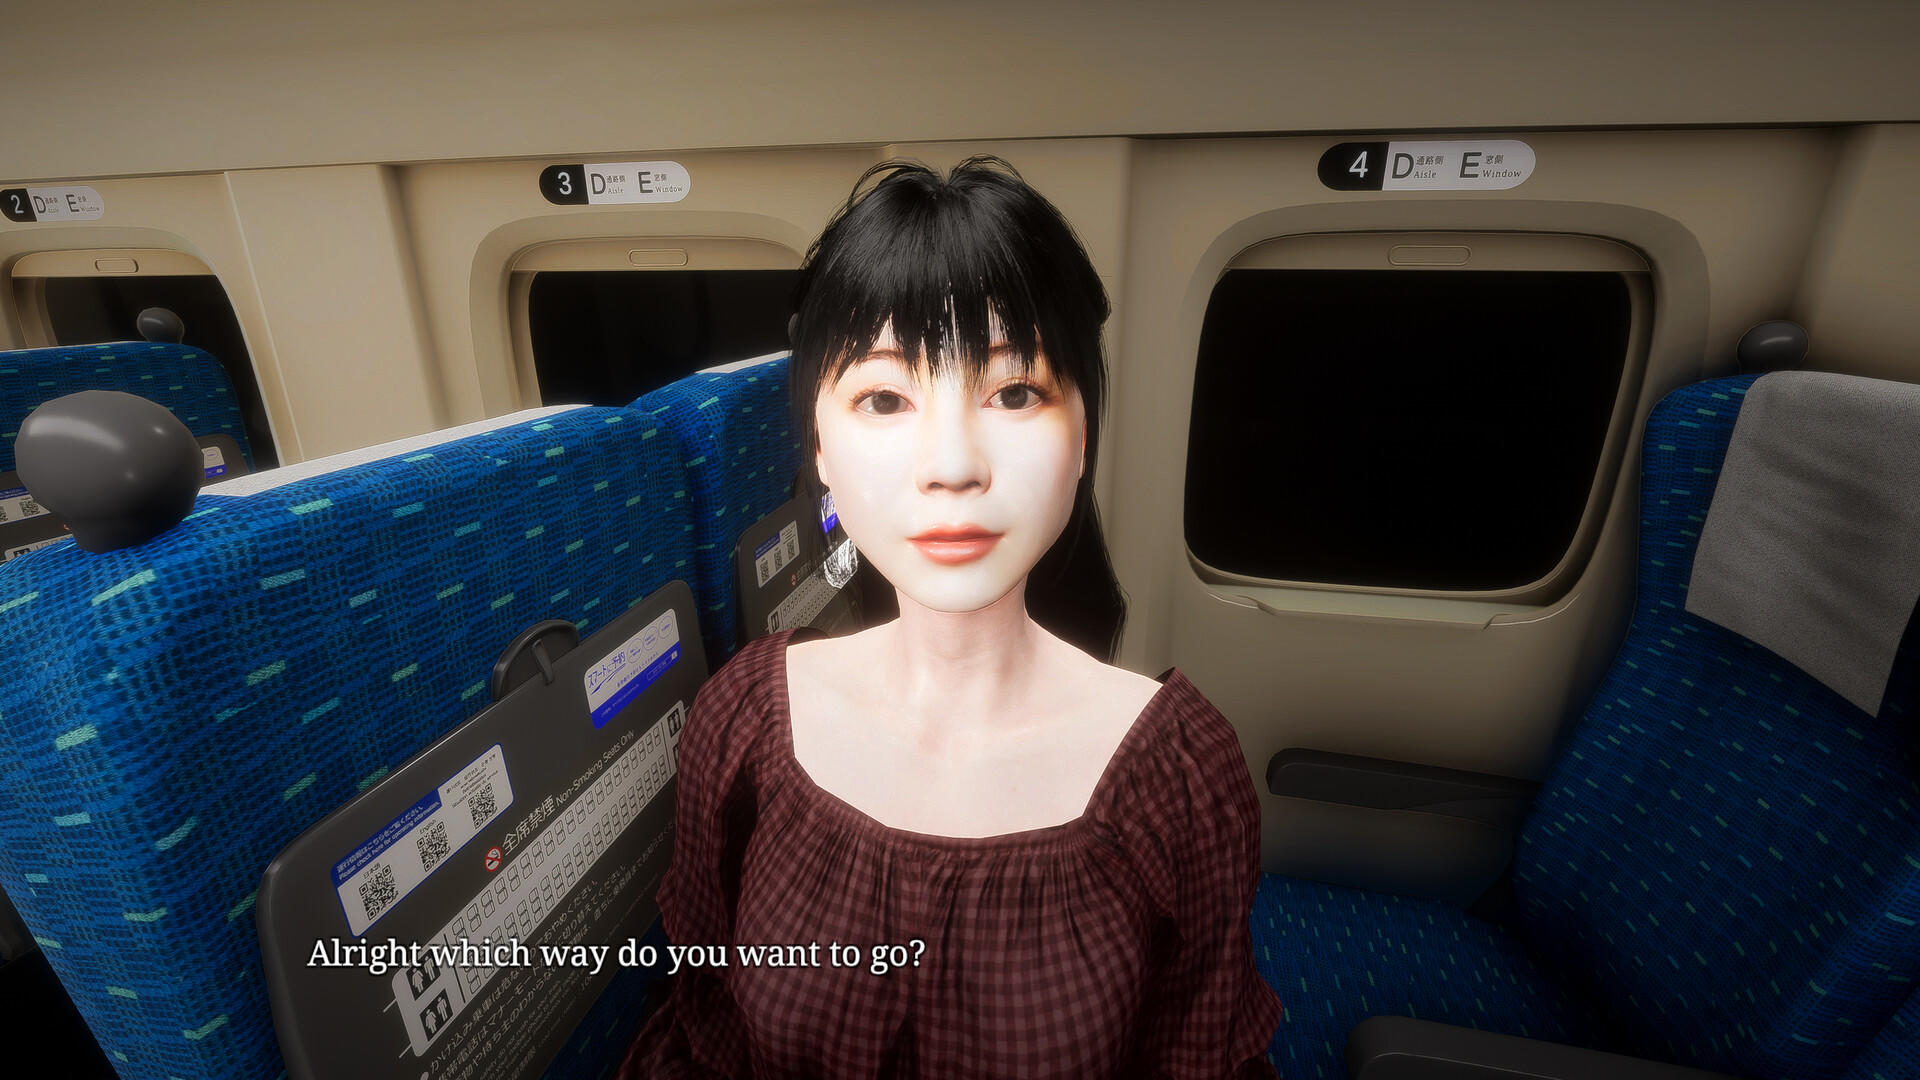 Screenshot 1 of [Arte de Chilla] Shinkansen 0 | Shinkansen No. 0 